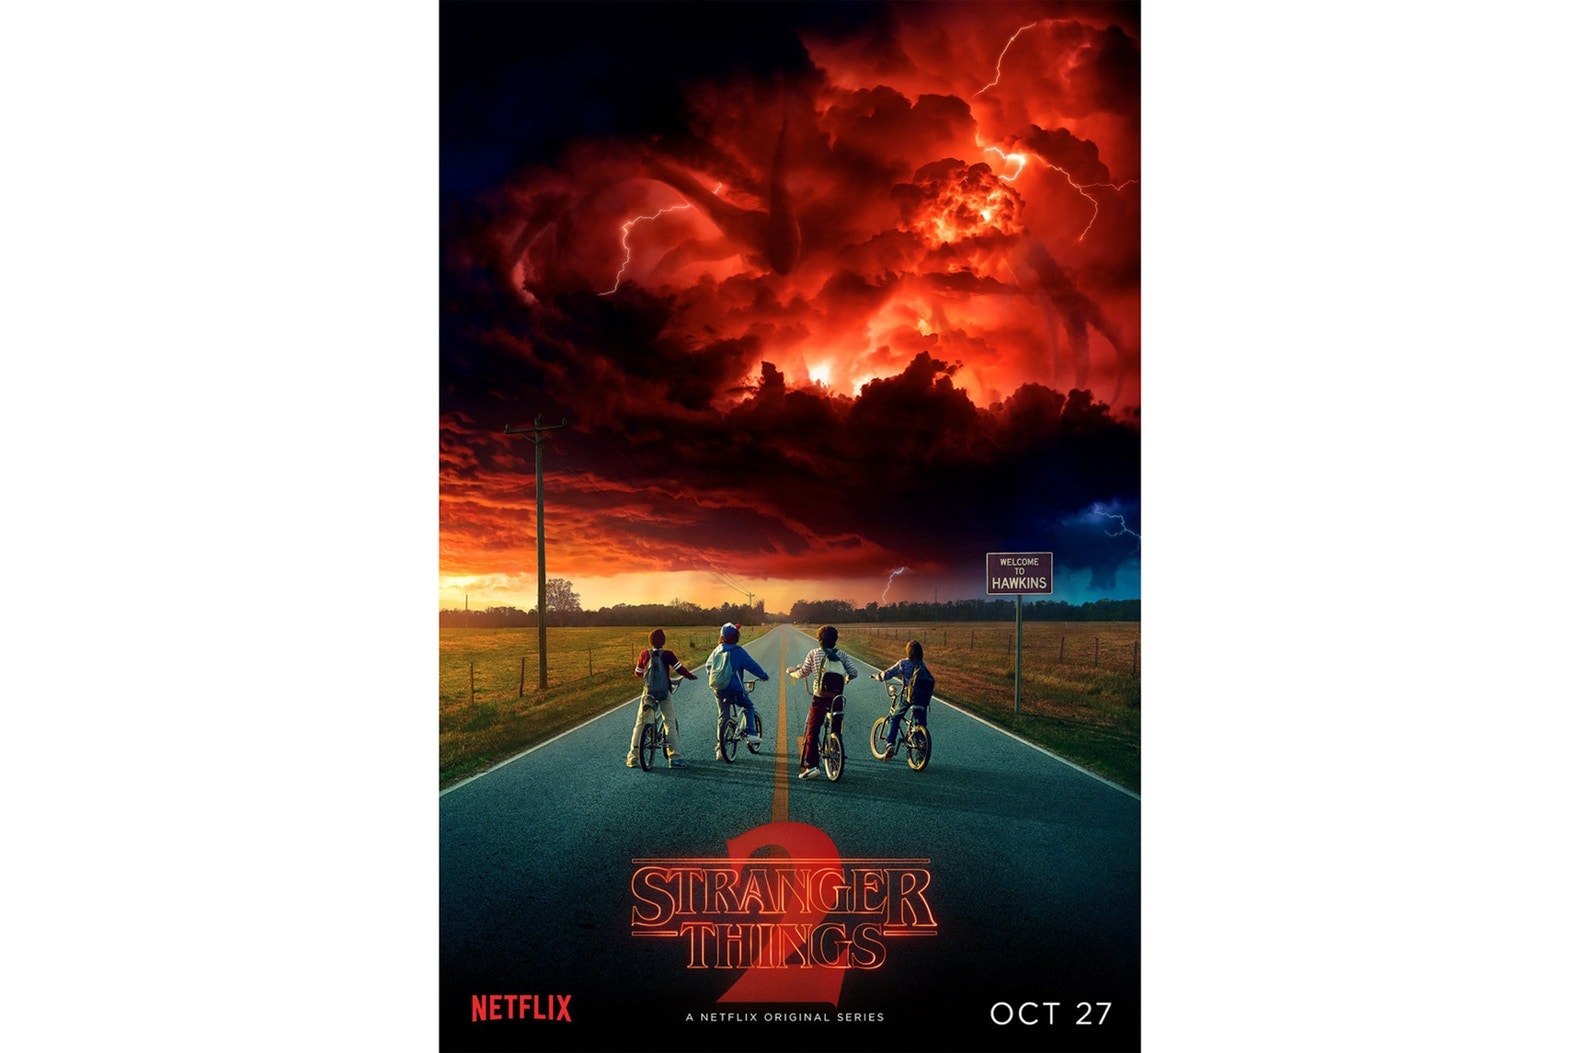 'Stranger Things' Season 2 Netflix Official Teaser